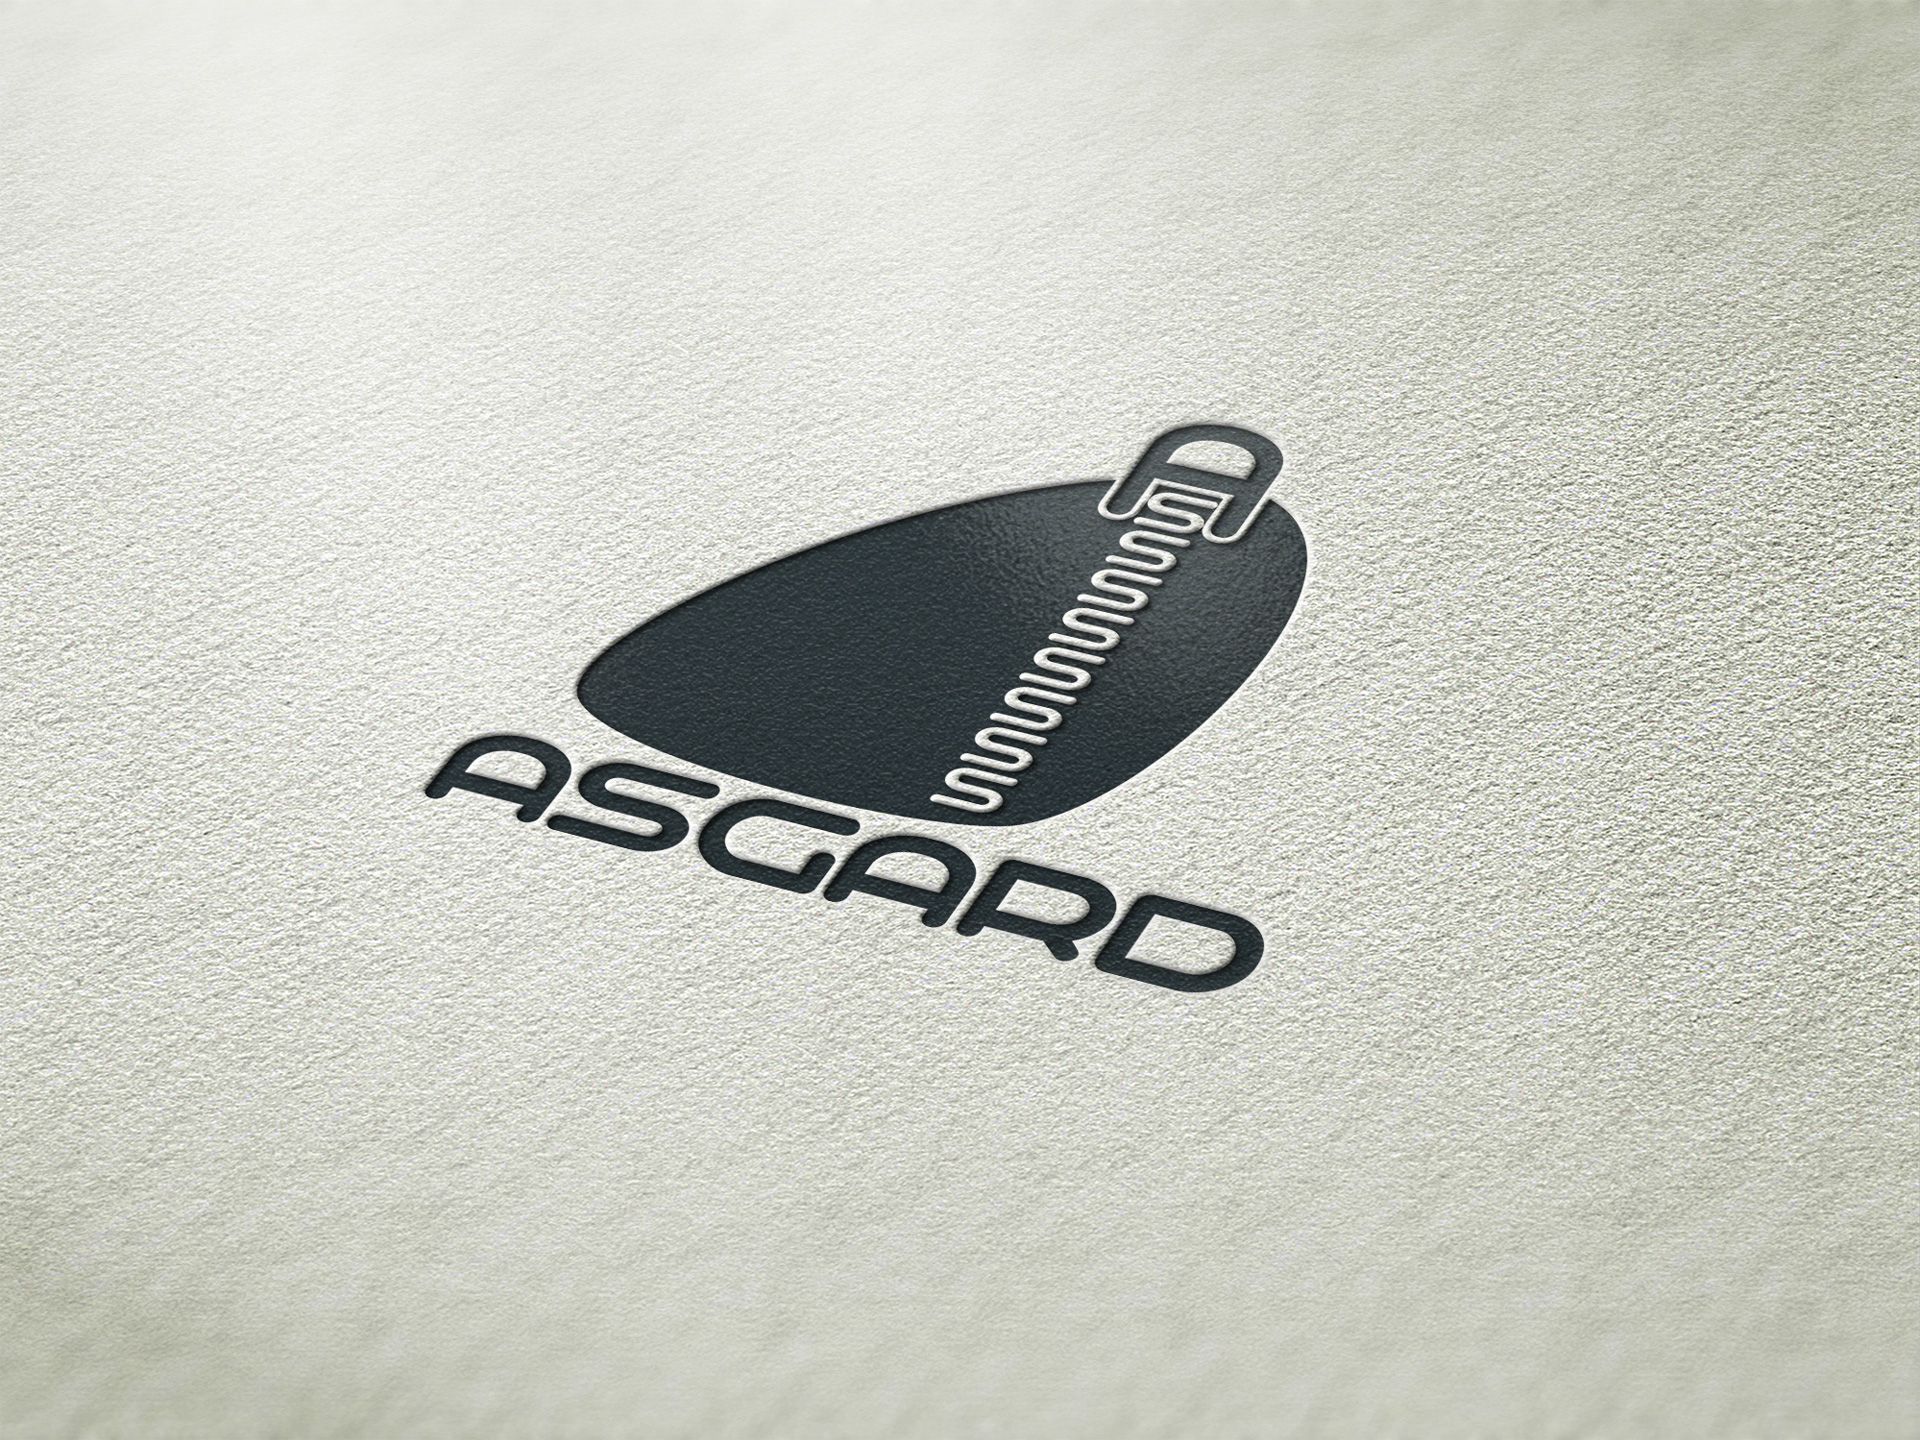 Логотип для рюкзаков и сумок ASGARD - дизайнер Advokat72